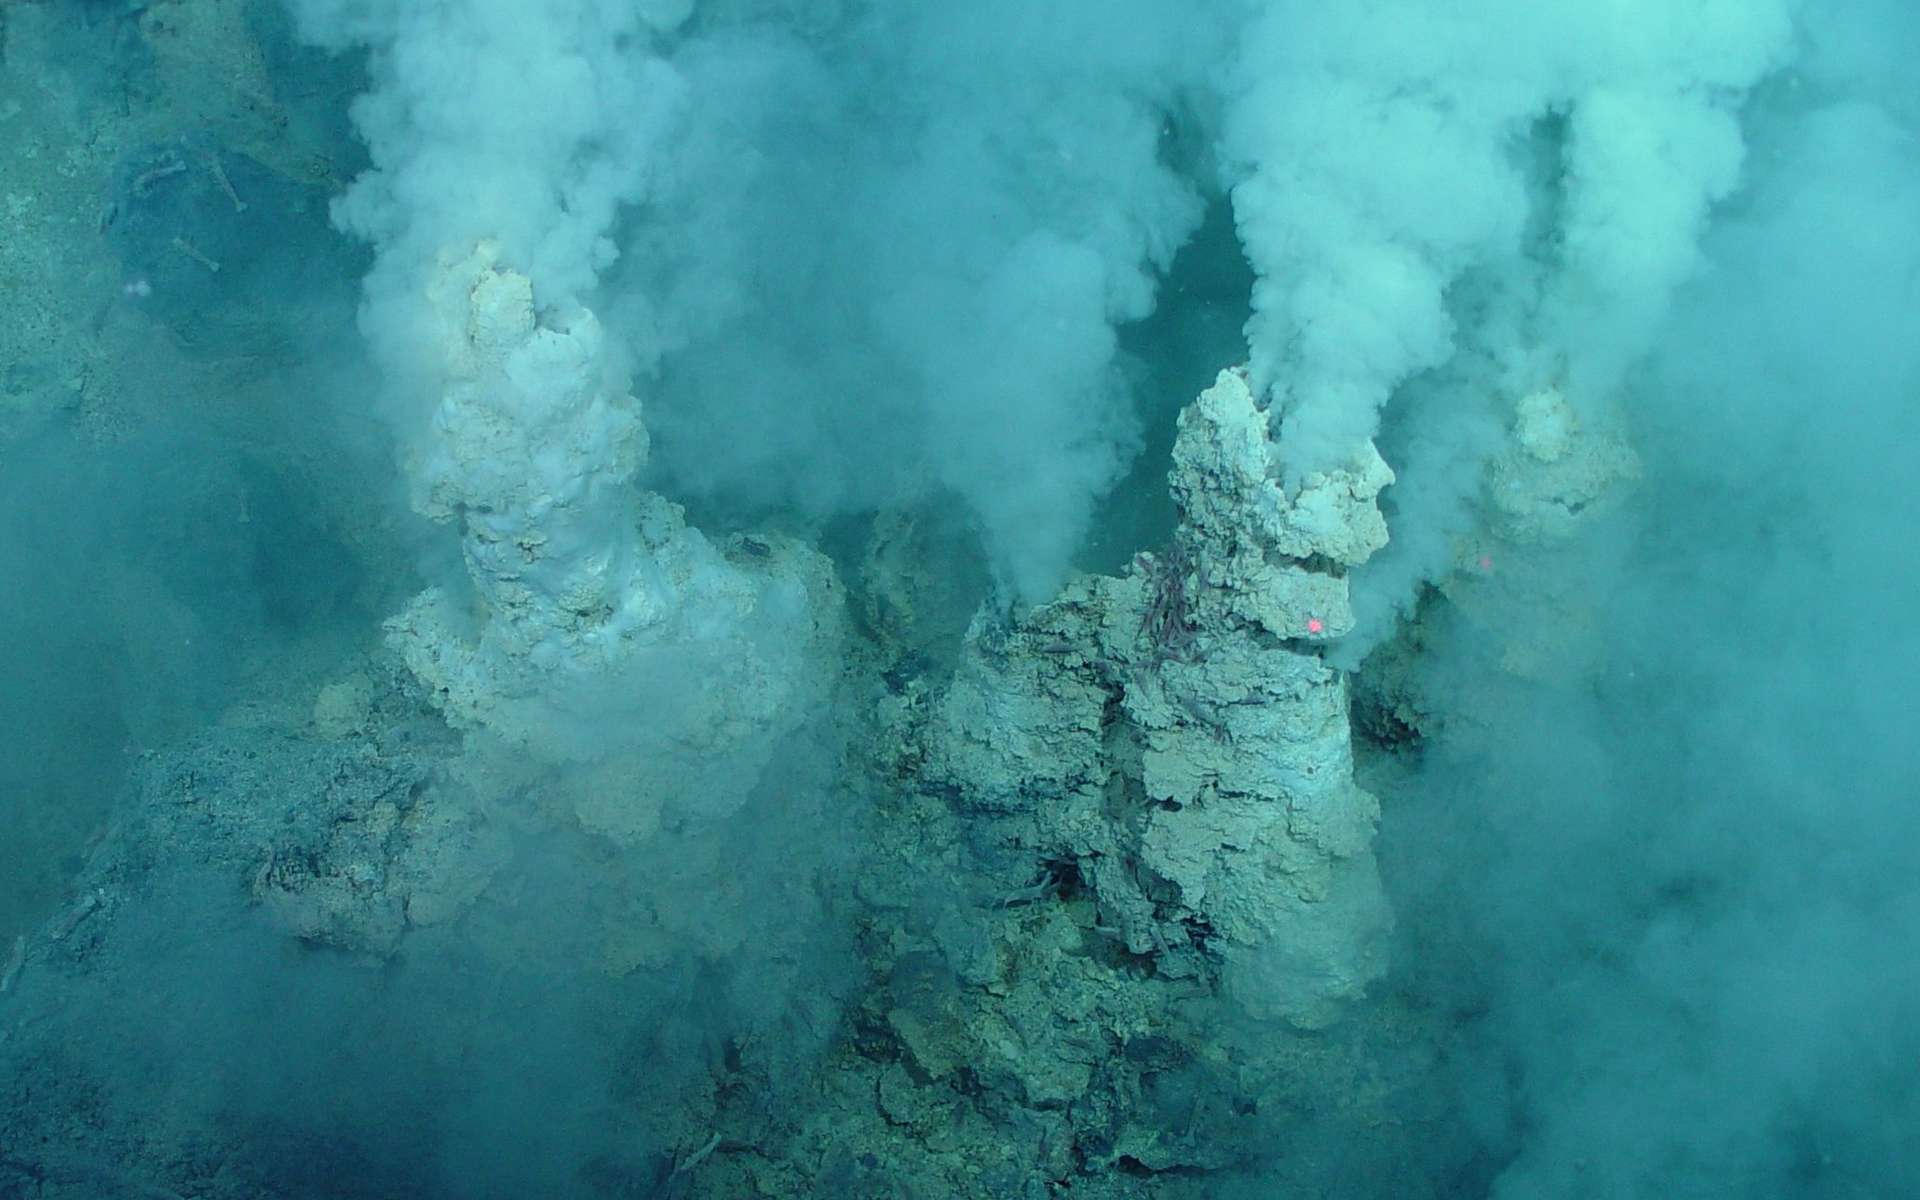 Un exemple des sources hydrothermales découvertes au fond des océans, souvent proches des dorsales océaniques à des milliers de mètres de profondeur. Des organismes vivent là, dans une eau acide et très chaude, jusqu'à plus de 100 °C. Ces écosystèmes sans lumière fonctionnent grâce à l'énergie de la chimiosynthèse, exploitant par exemple le soufre ou l'hydrogène. La photographie a été prise au fond de l'océan Pacifique, sur l'arc volcanique des Mariannes. © Pacific Ring of Fire 2004 Expedition, NOAA Office of Ocean Exploration, Bob Embley, NOAA PMEL, Chief Scientist